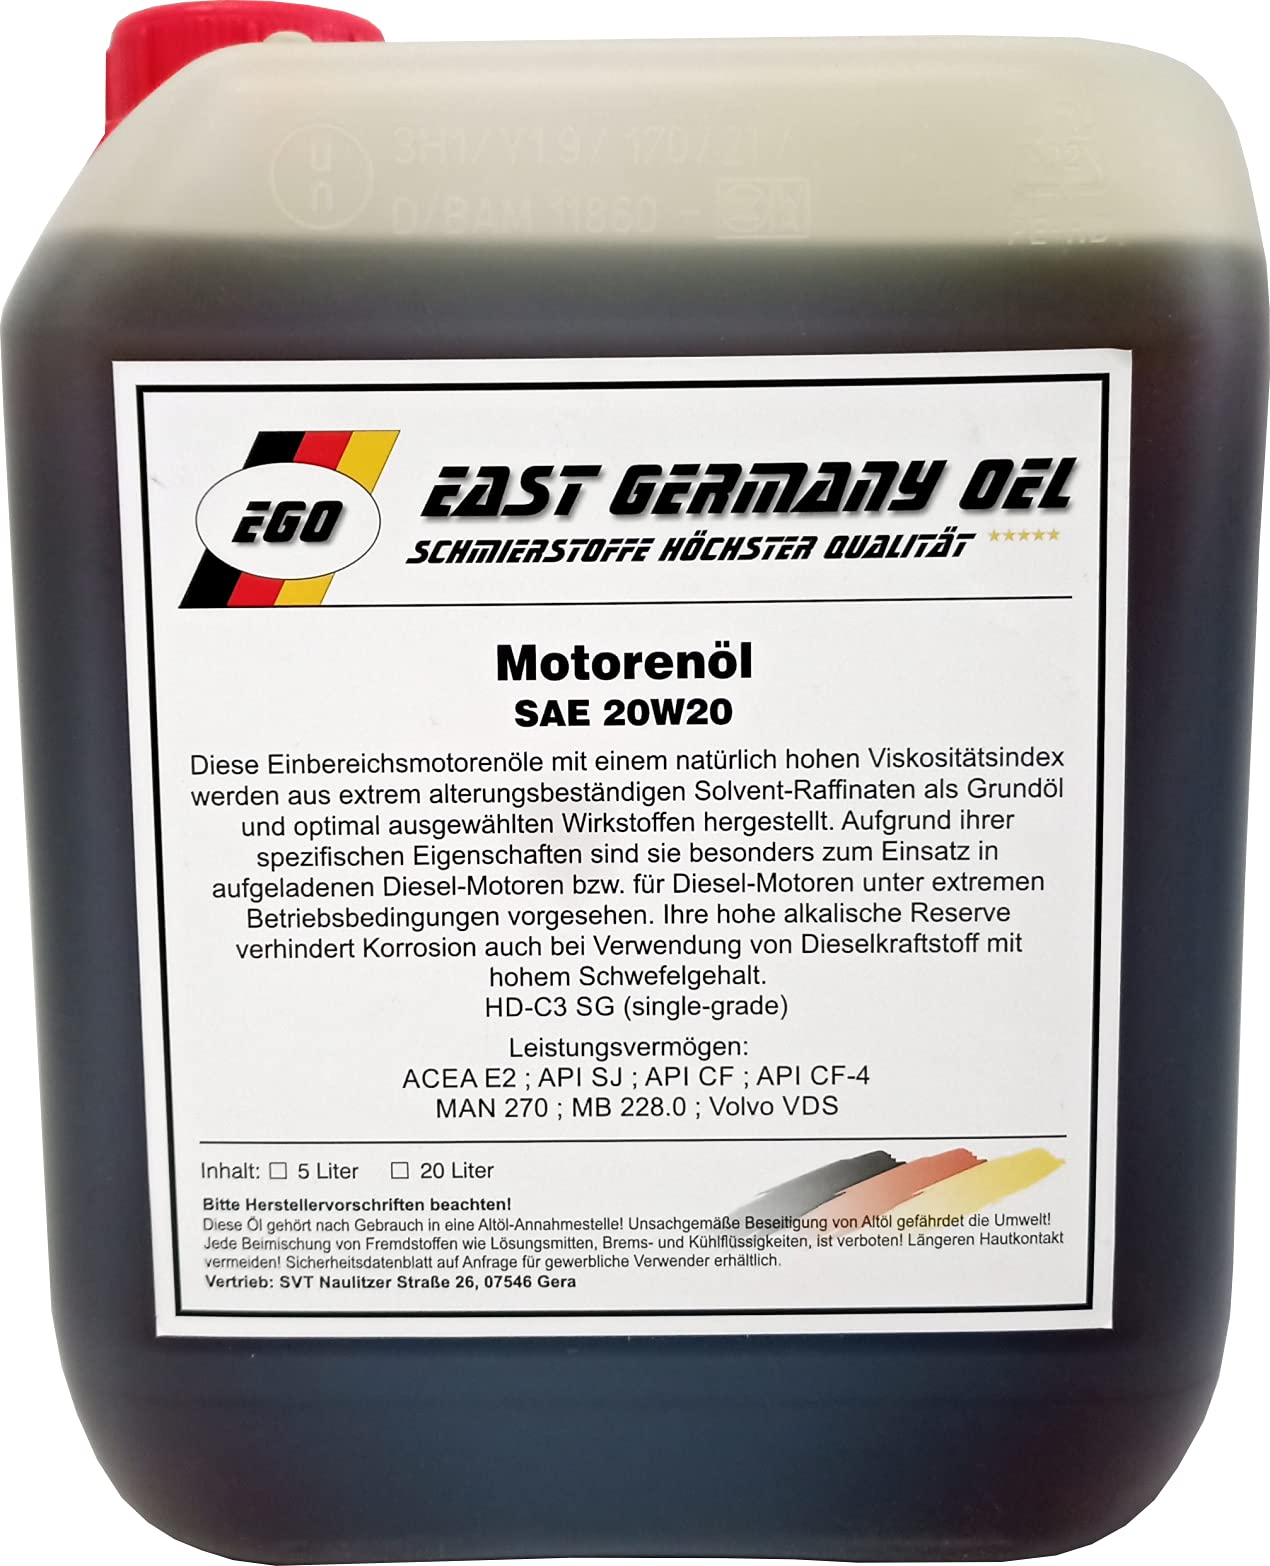 Motorenöl SAE 20W20 Kanister 5 Liter Inhalt von East Germany OIL